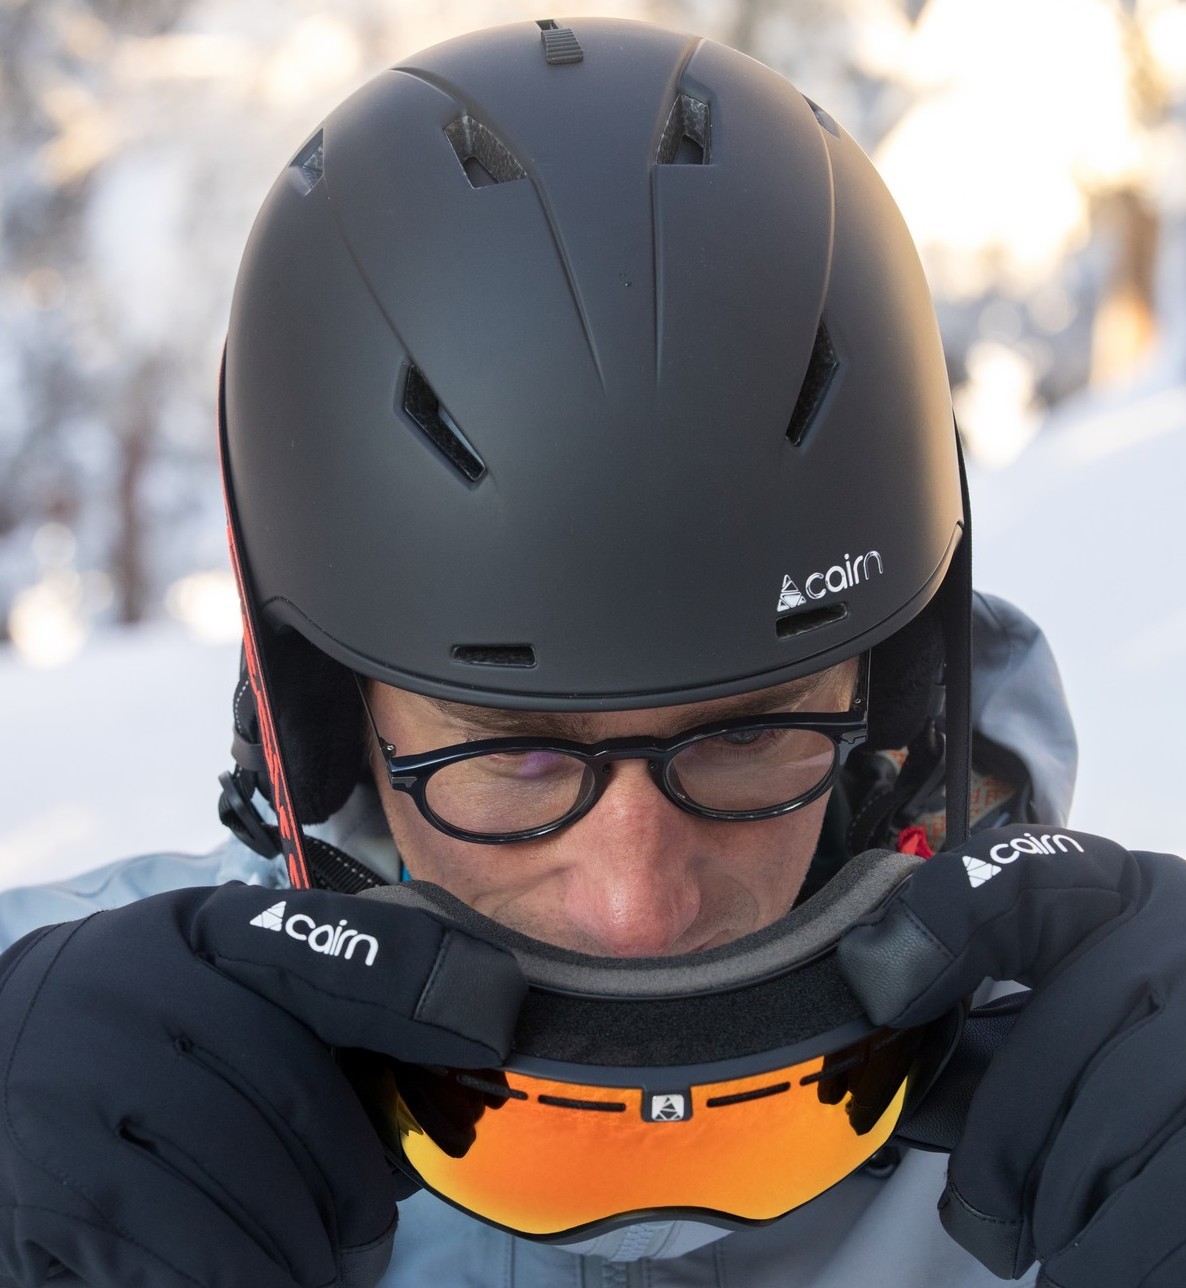 ACURE Lunettes de ski, lunettes de snowboard pour homme, femme, adulte,  jeune, OTG – avec protection anti-buée UV400